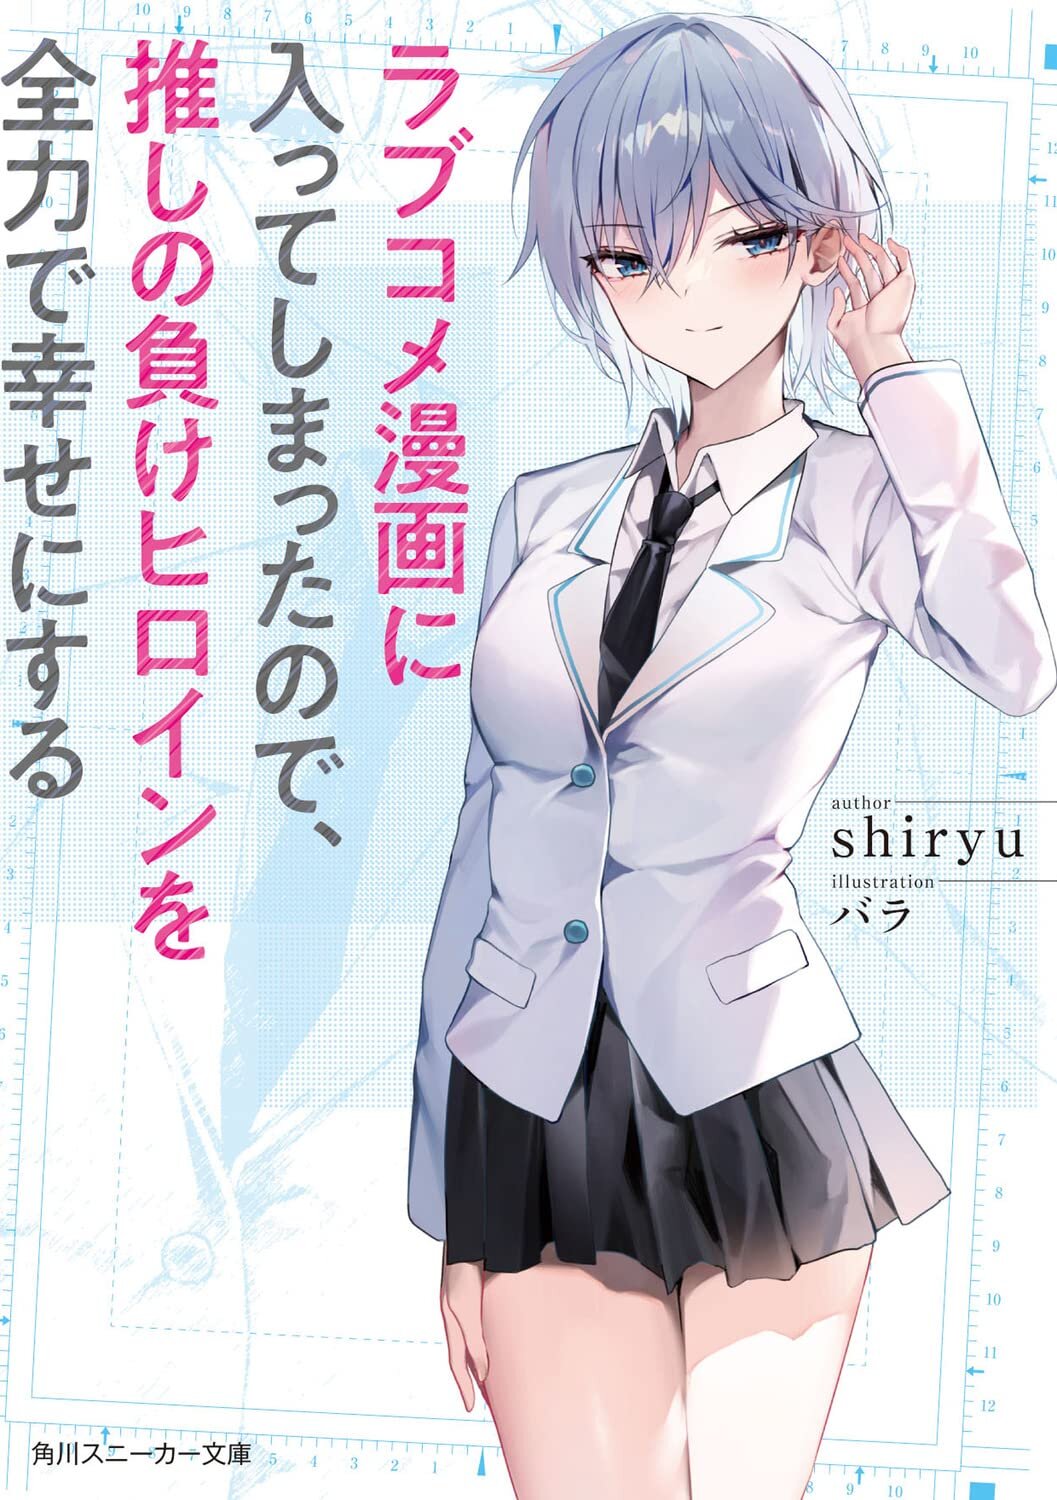 [นิยายแปล] (WN) Love Comedy manga ni haitte shimatta no de oshi no make Heroine o zenryoku de shiawase ni suru